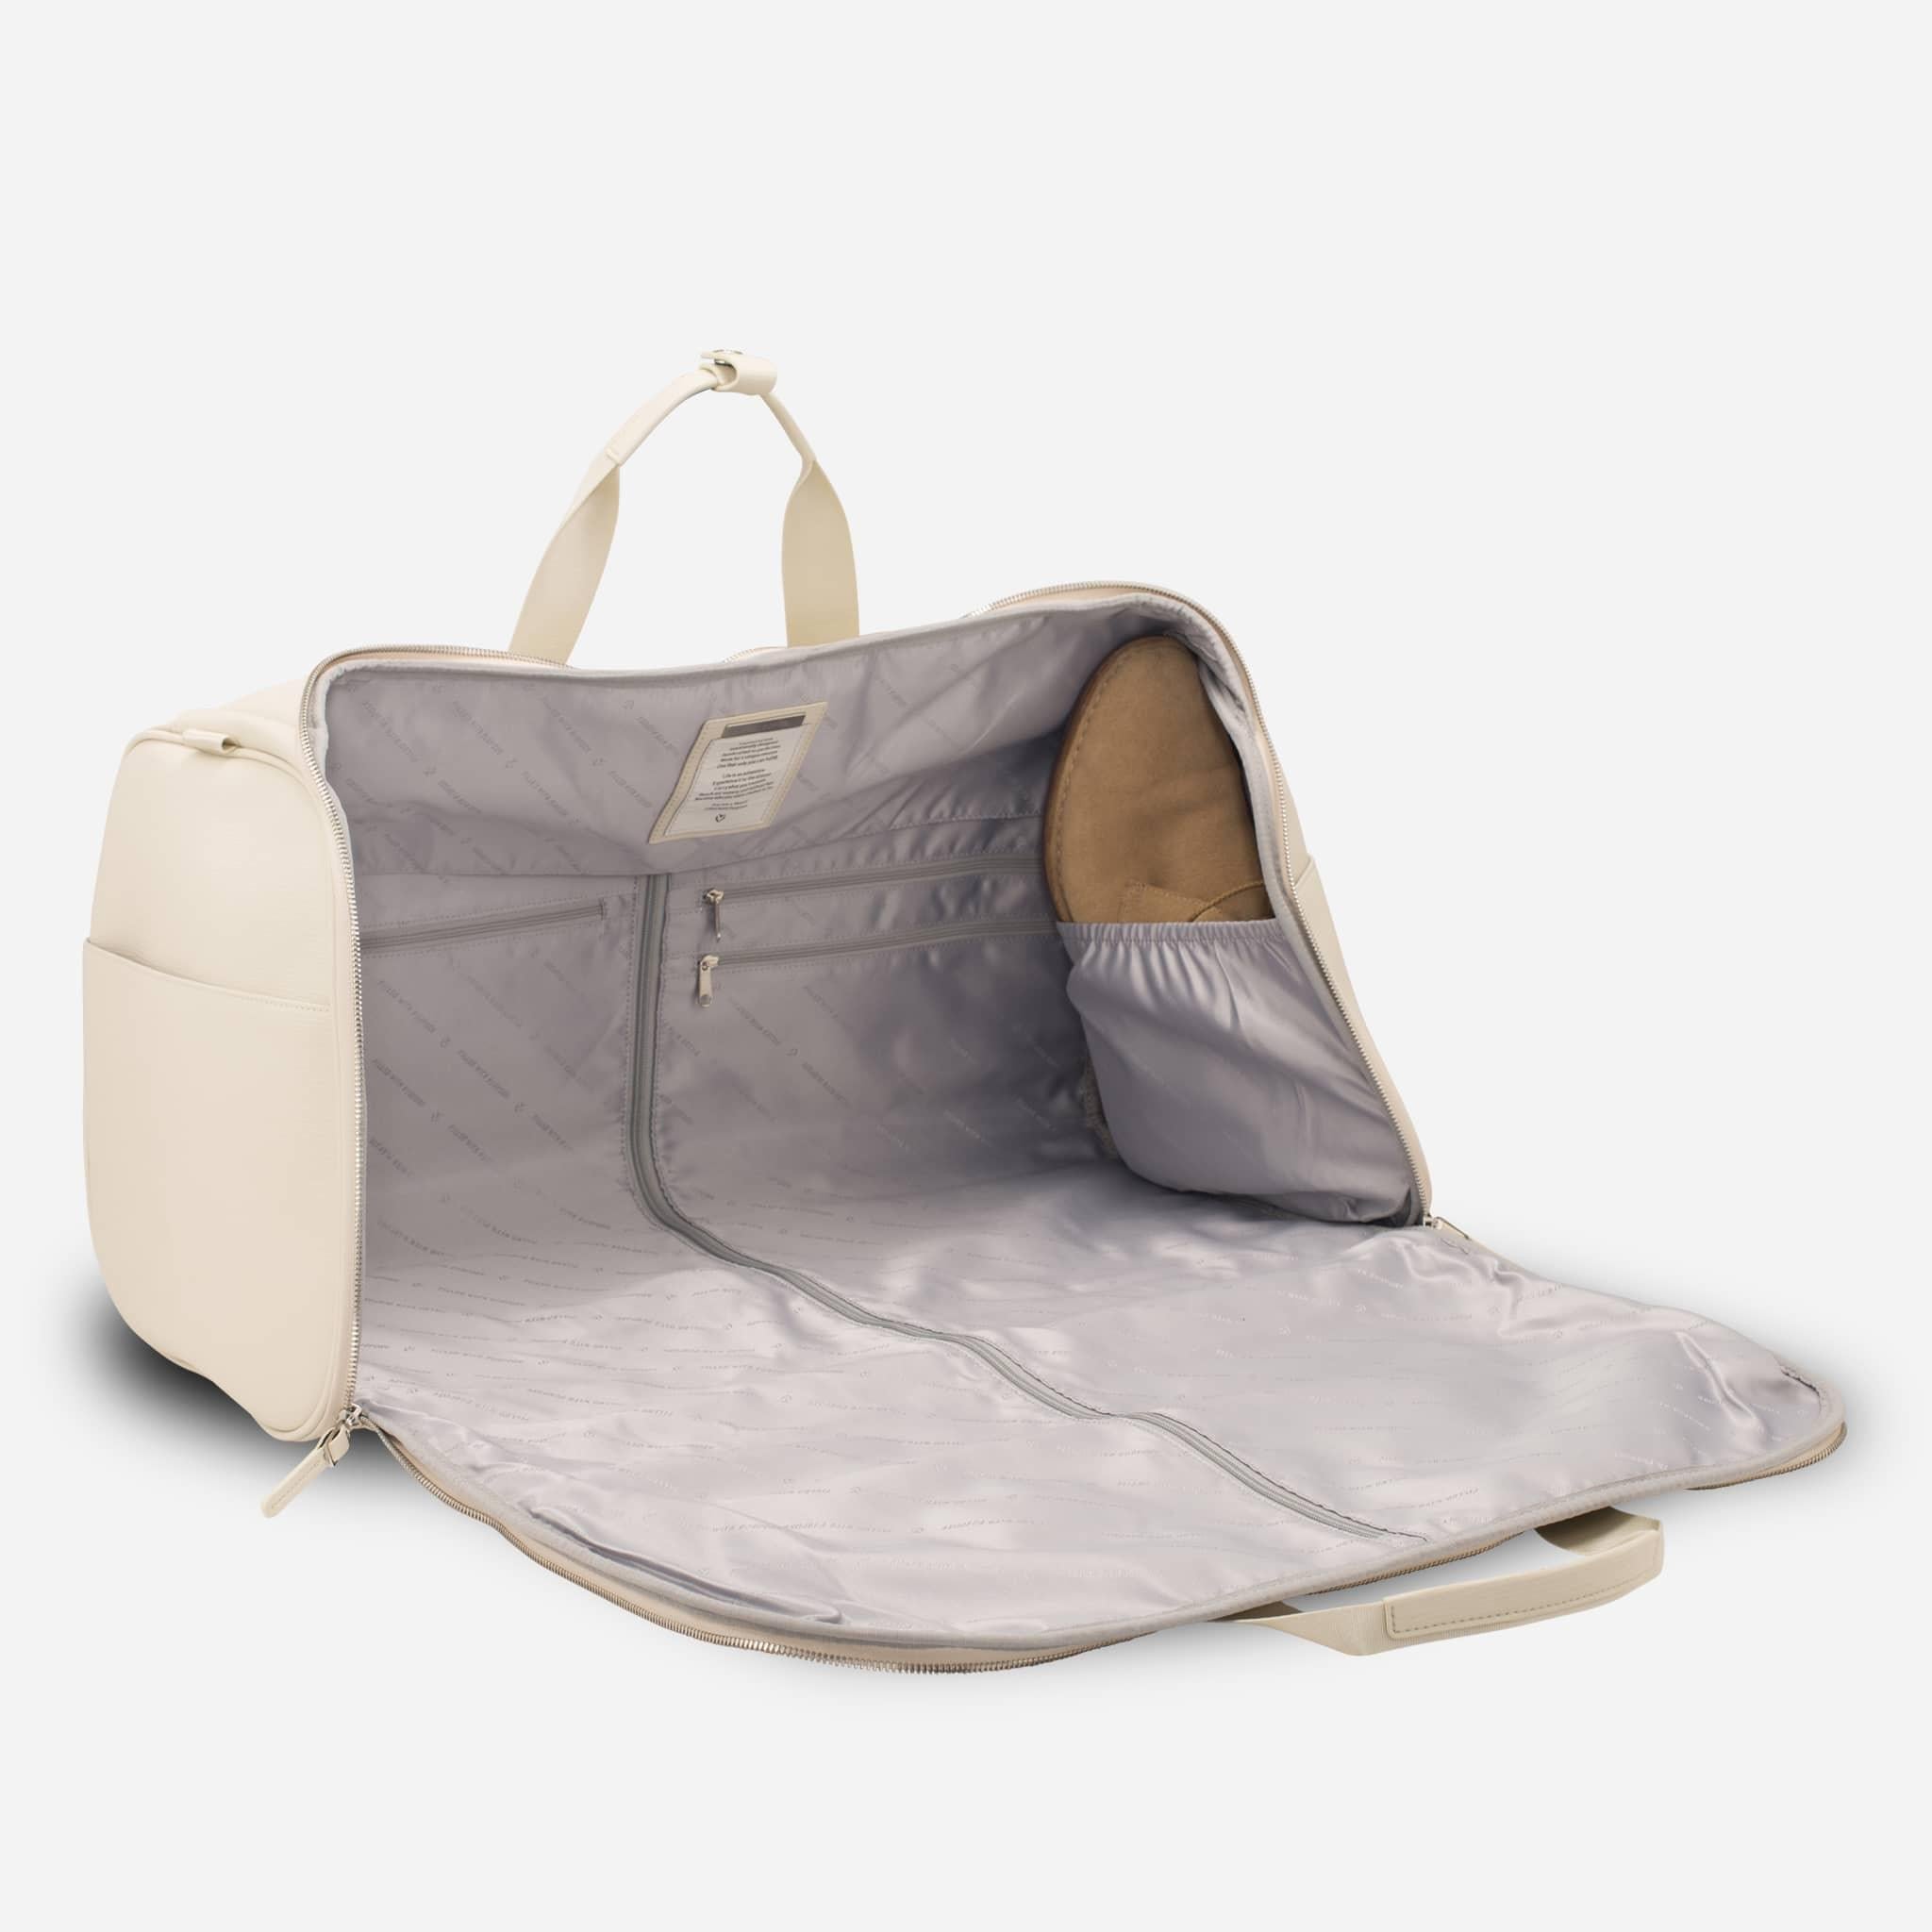 MVST Duffle Bag Garment Bag 2 in 1